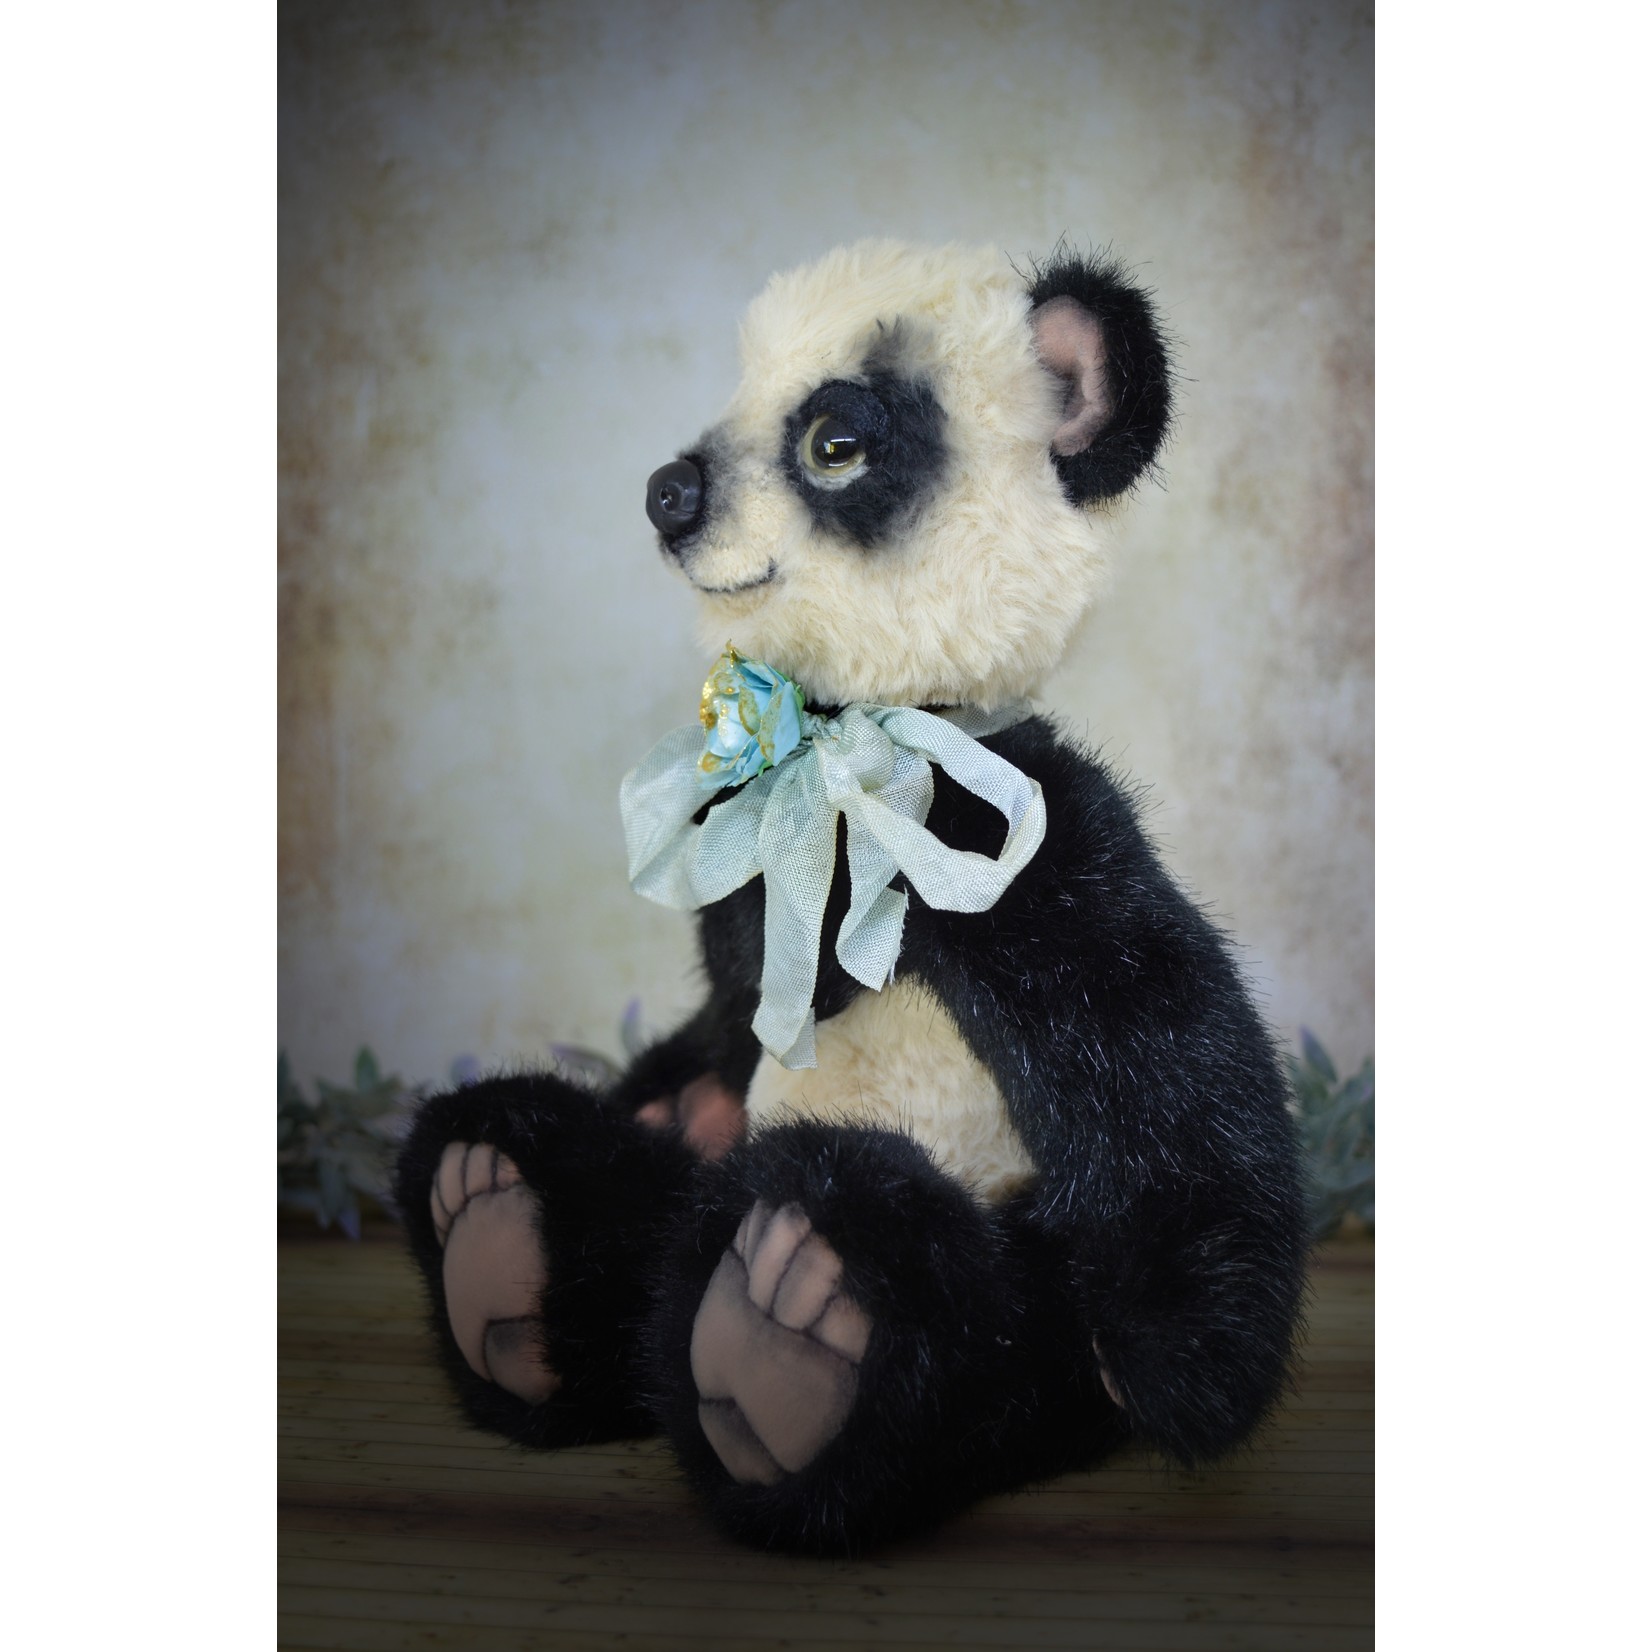 A Furrylicious original -  Xiang the happy panda